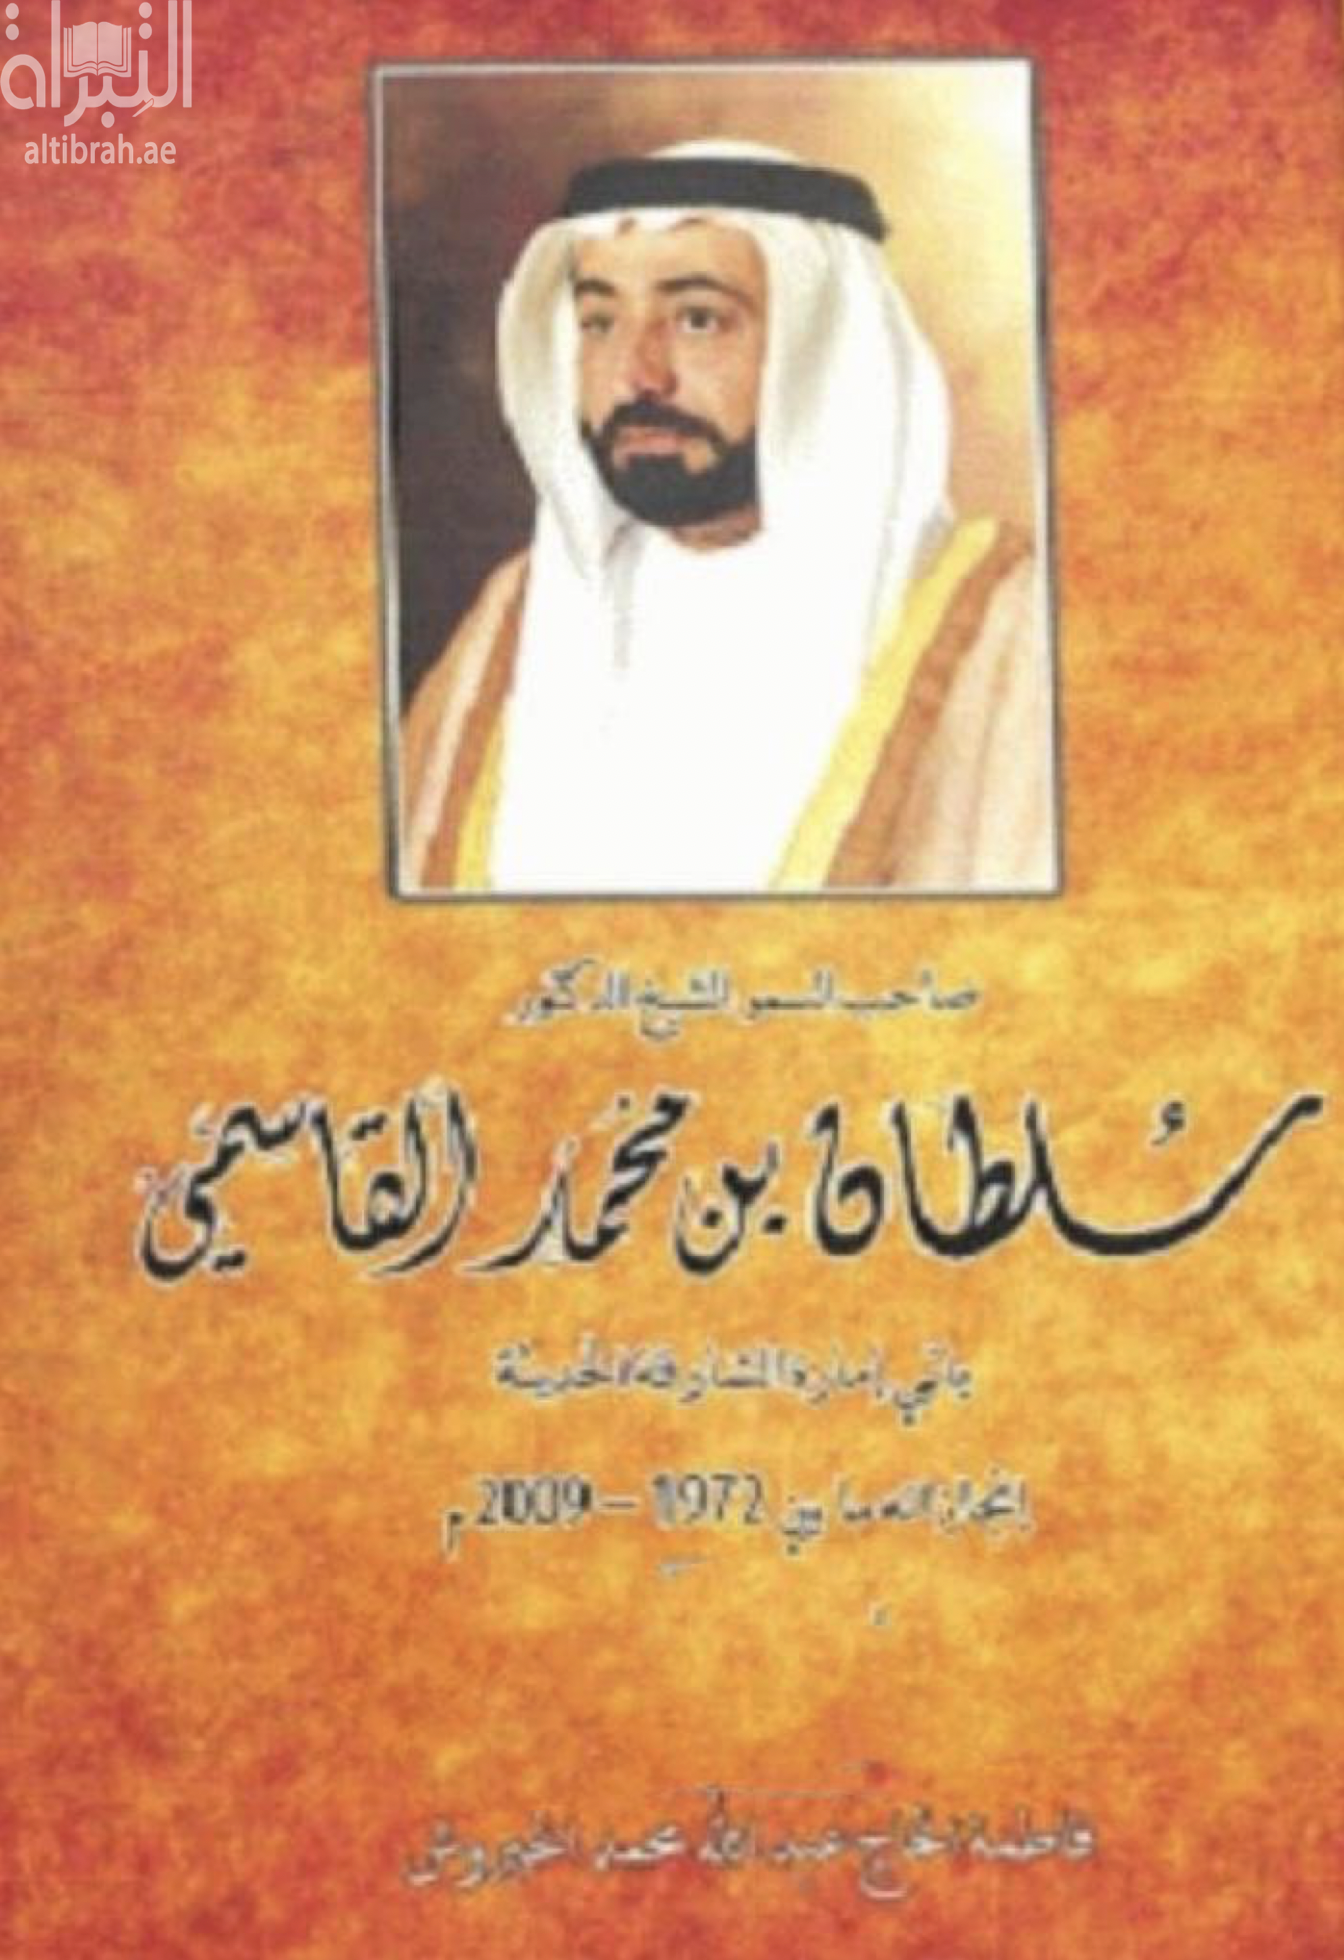 صاحب السمو الشيخ الدكتور سلطان بن محمد القاسمي باني إمارة الشارقة الحديثة : إنجازاته ما بين 1972 م - 2009 م